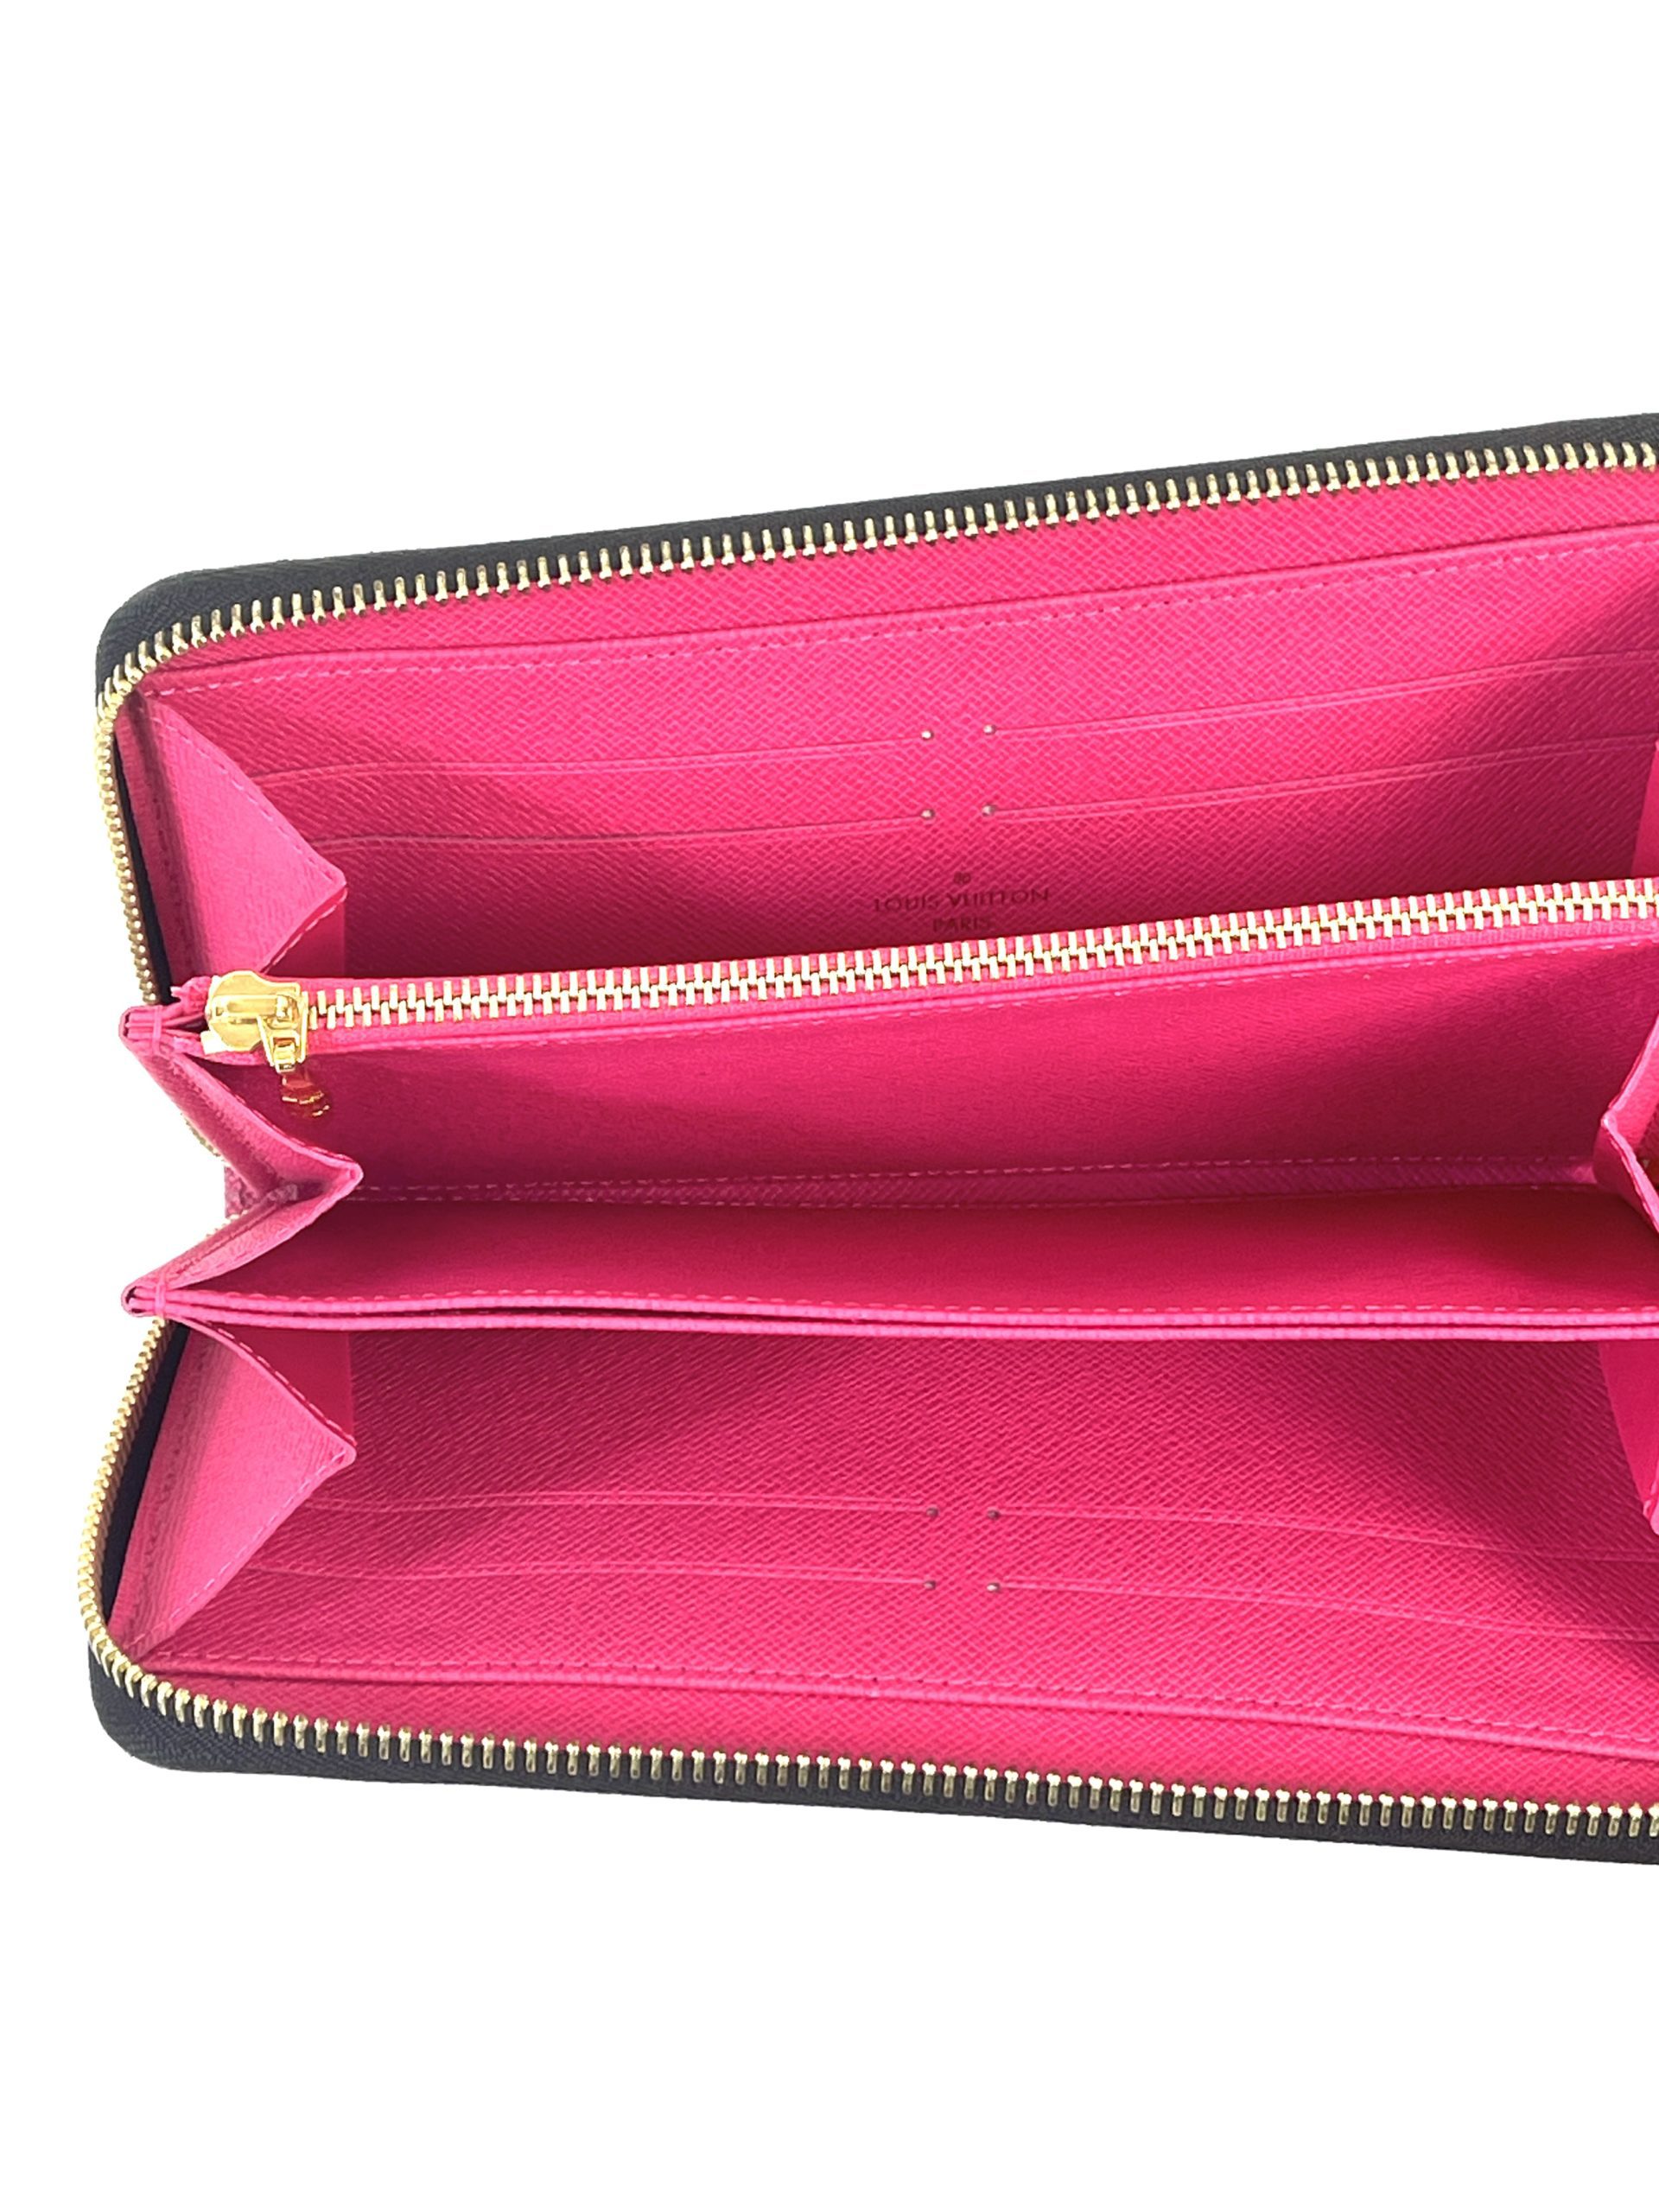 vuitton wallet pink